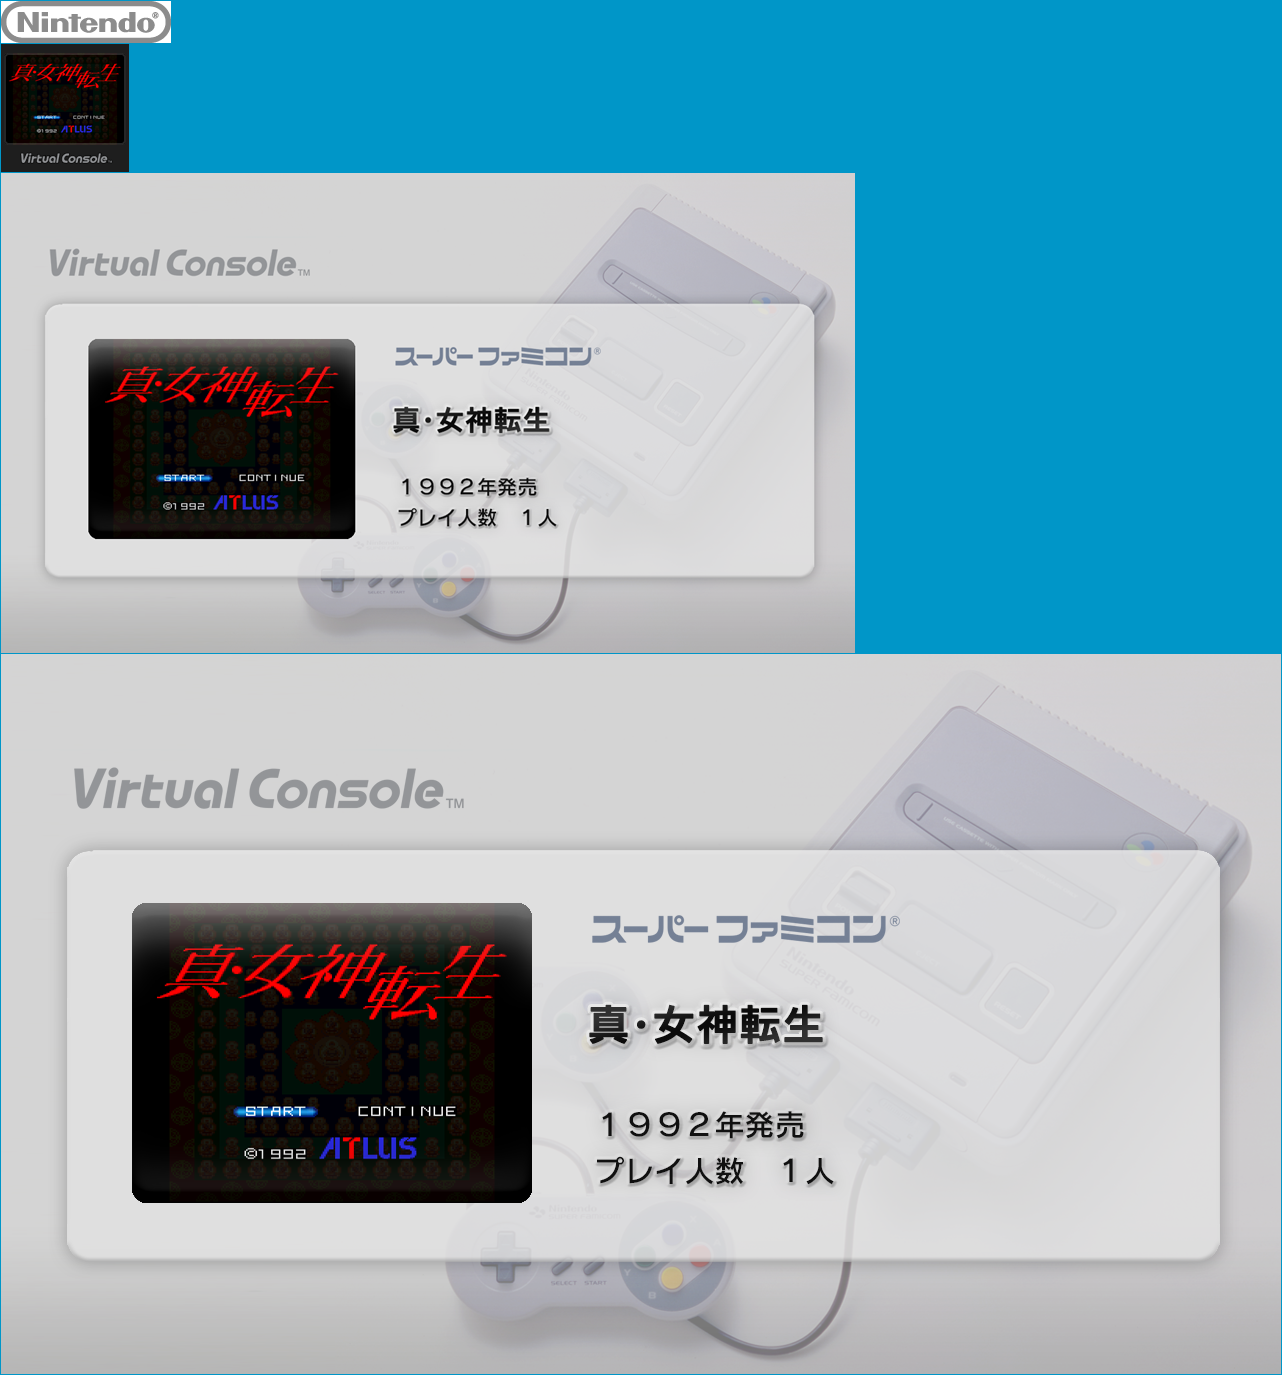 Virtual Console - Shin Megami Tensei